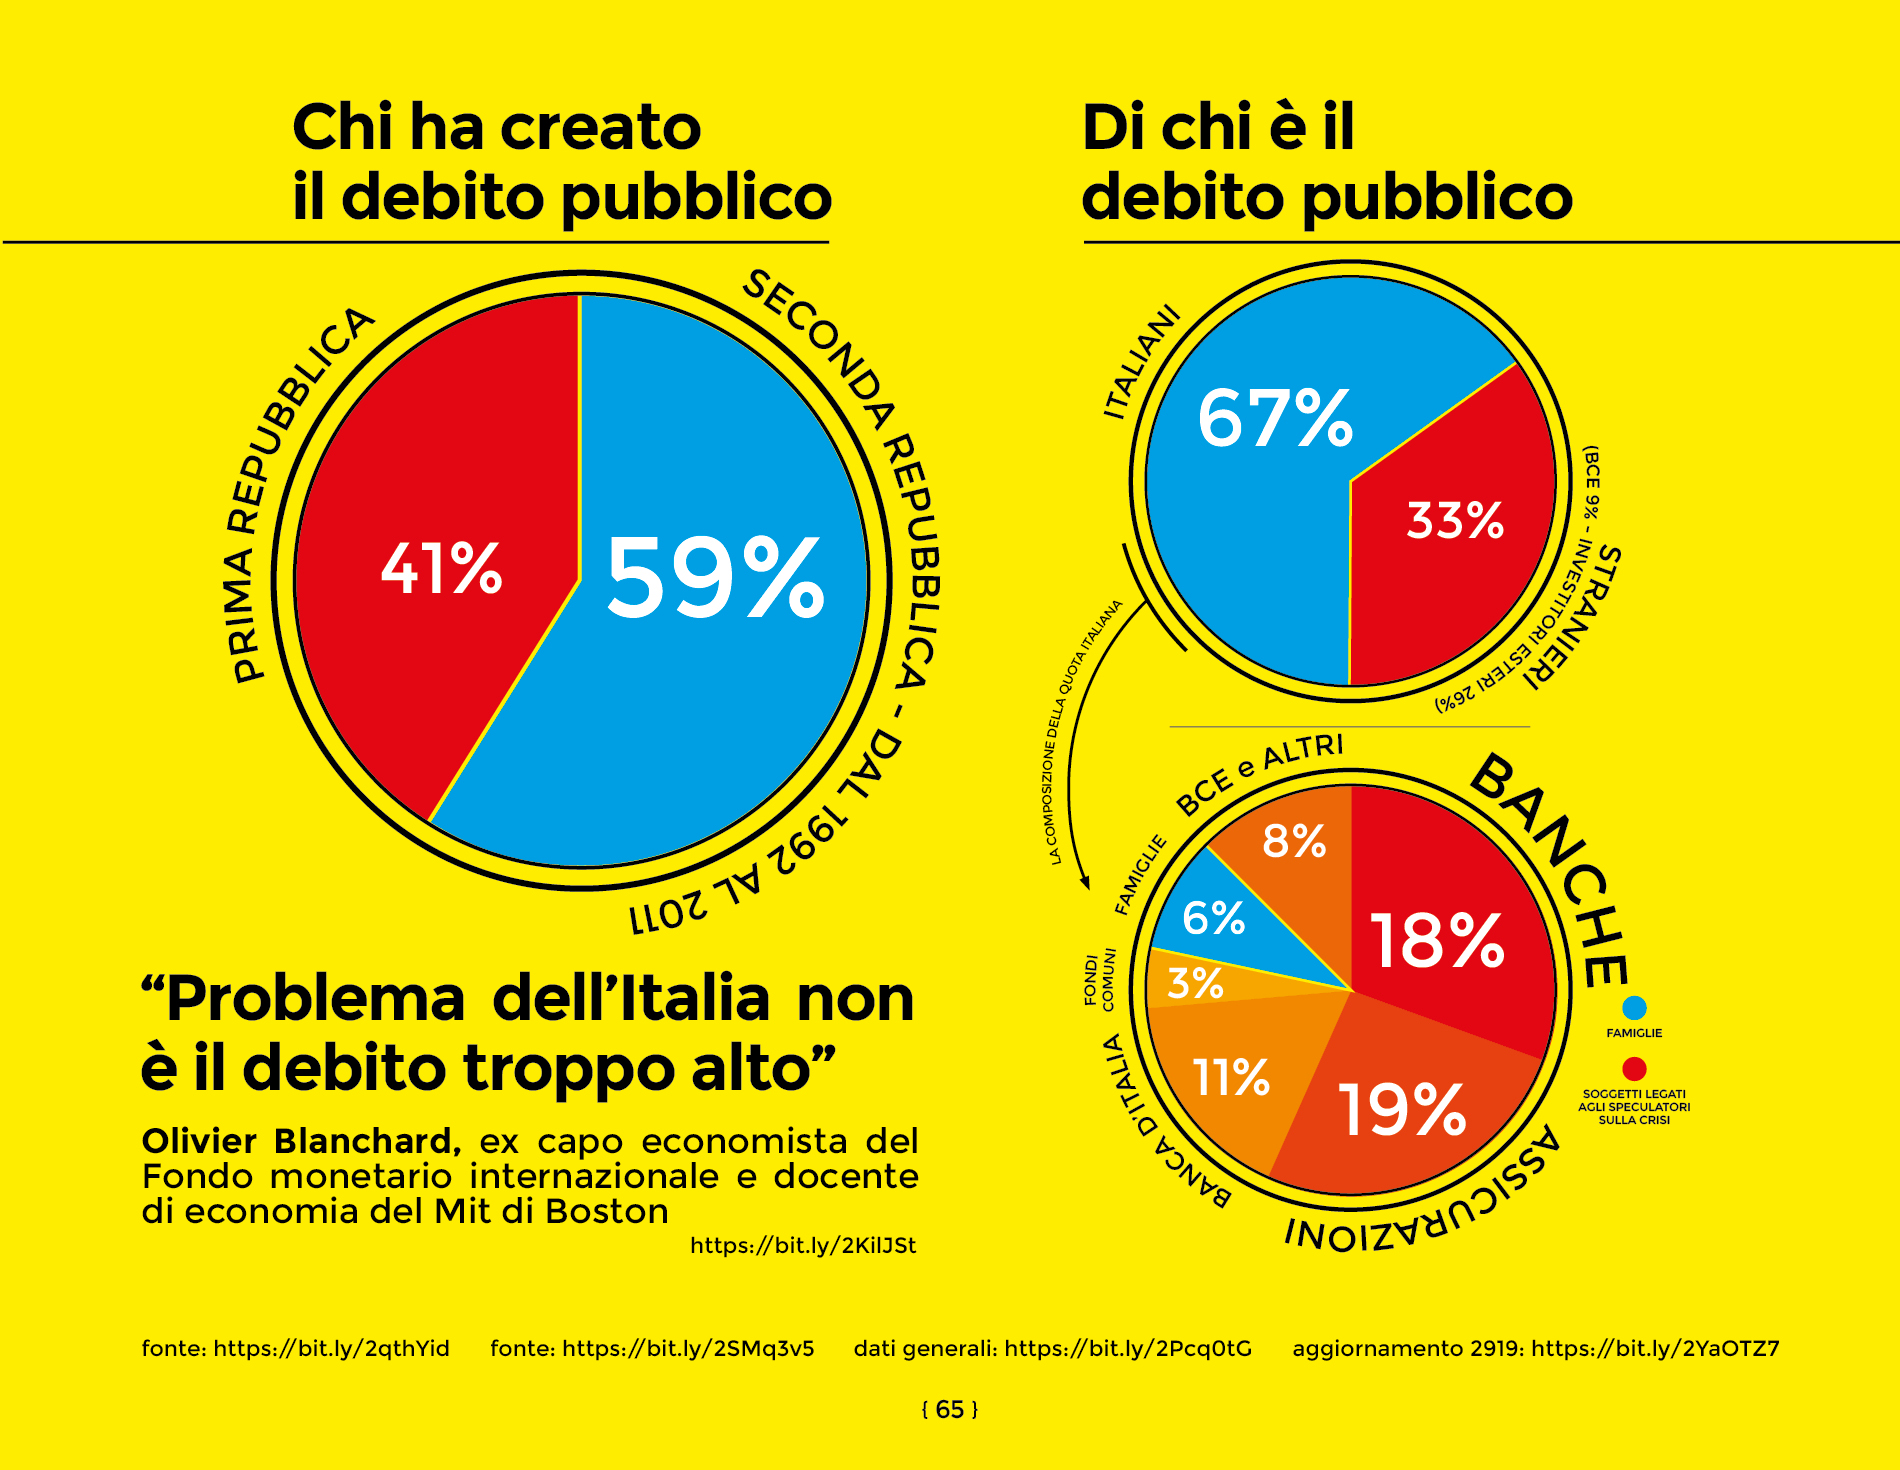 Il debito pubblico italiano in sintesti, dal libro di economia spiegata facile